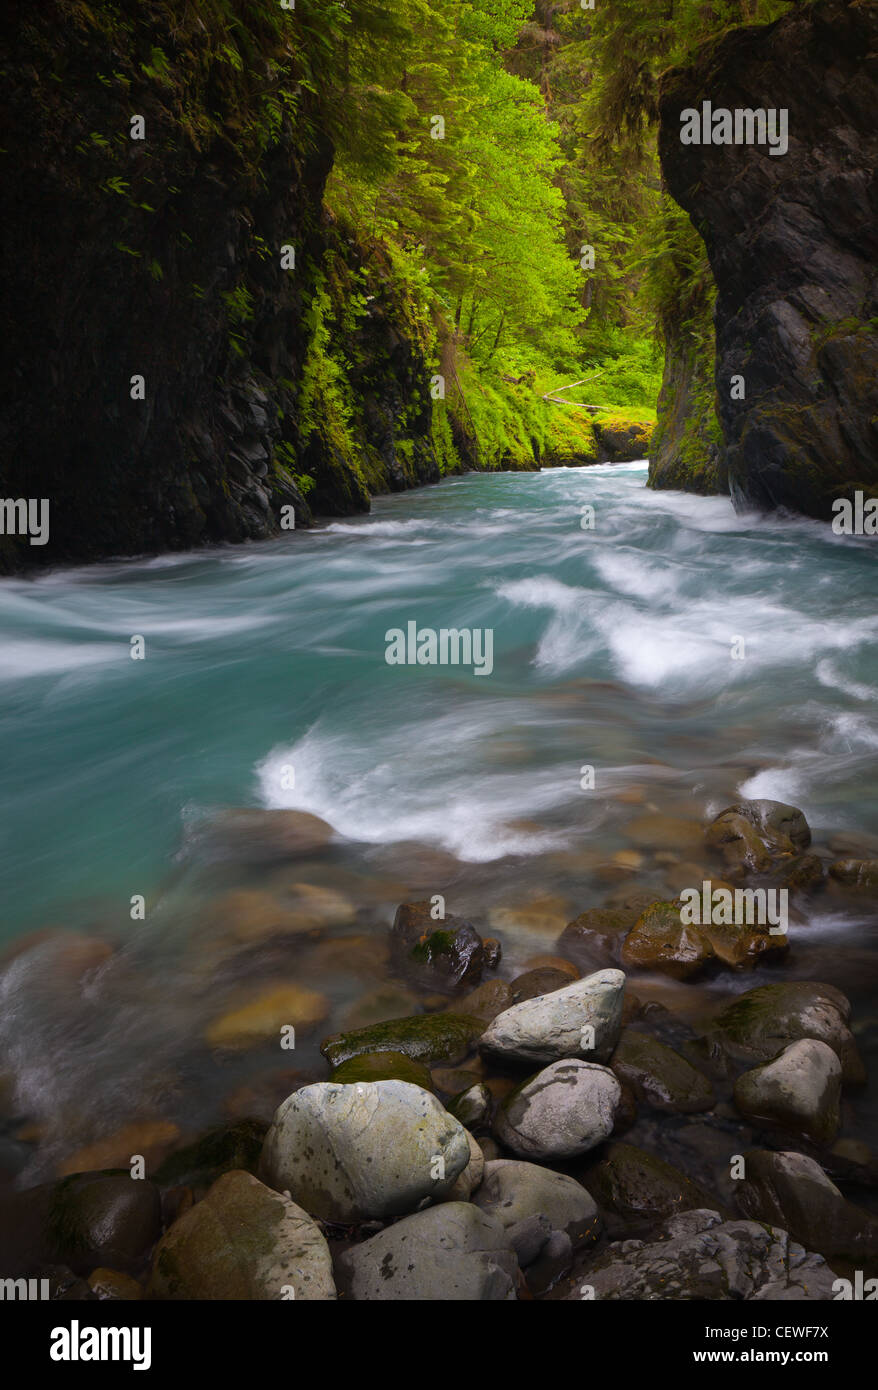 Quinault River dans la région de Olympic National Park, Washington state Banque D'Images